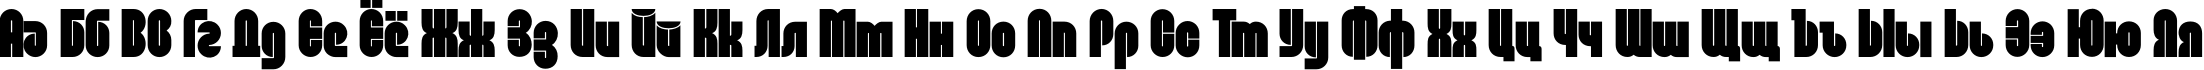 Пример написания русского алфавита шрифтом Dan